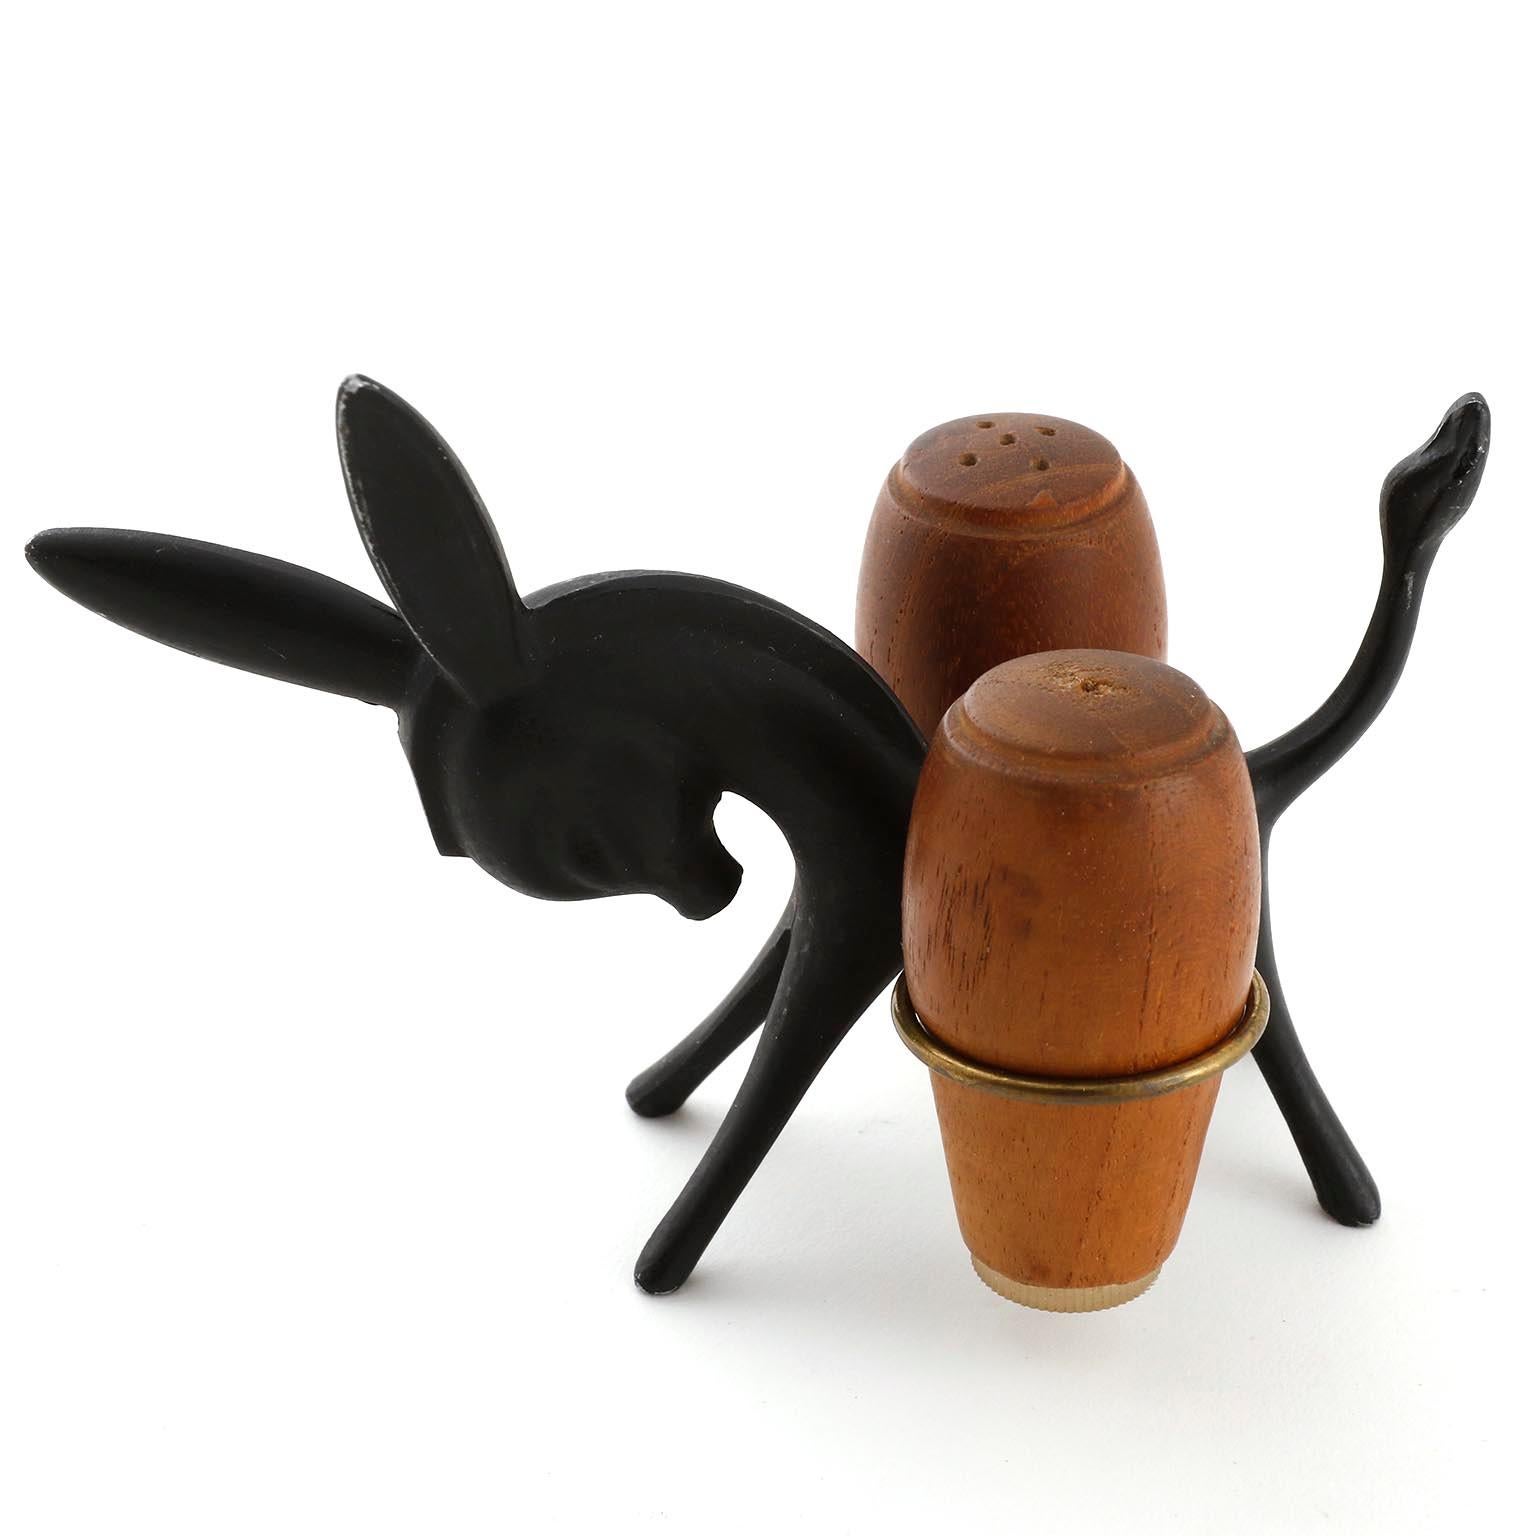 Un ensemble de salière et poivrière en forme d'âne conçu par Walter Bosse et fabriqué par Hertha Baller, Autriche, Vienne, au milieu du siècle dans les années 1950.
L'âne est fabriqué en laiton noirci. Les shakers sont fabriqués en bois de